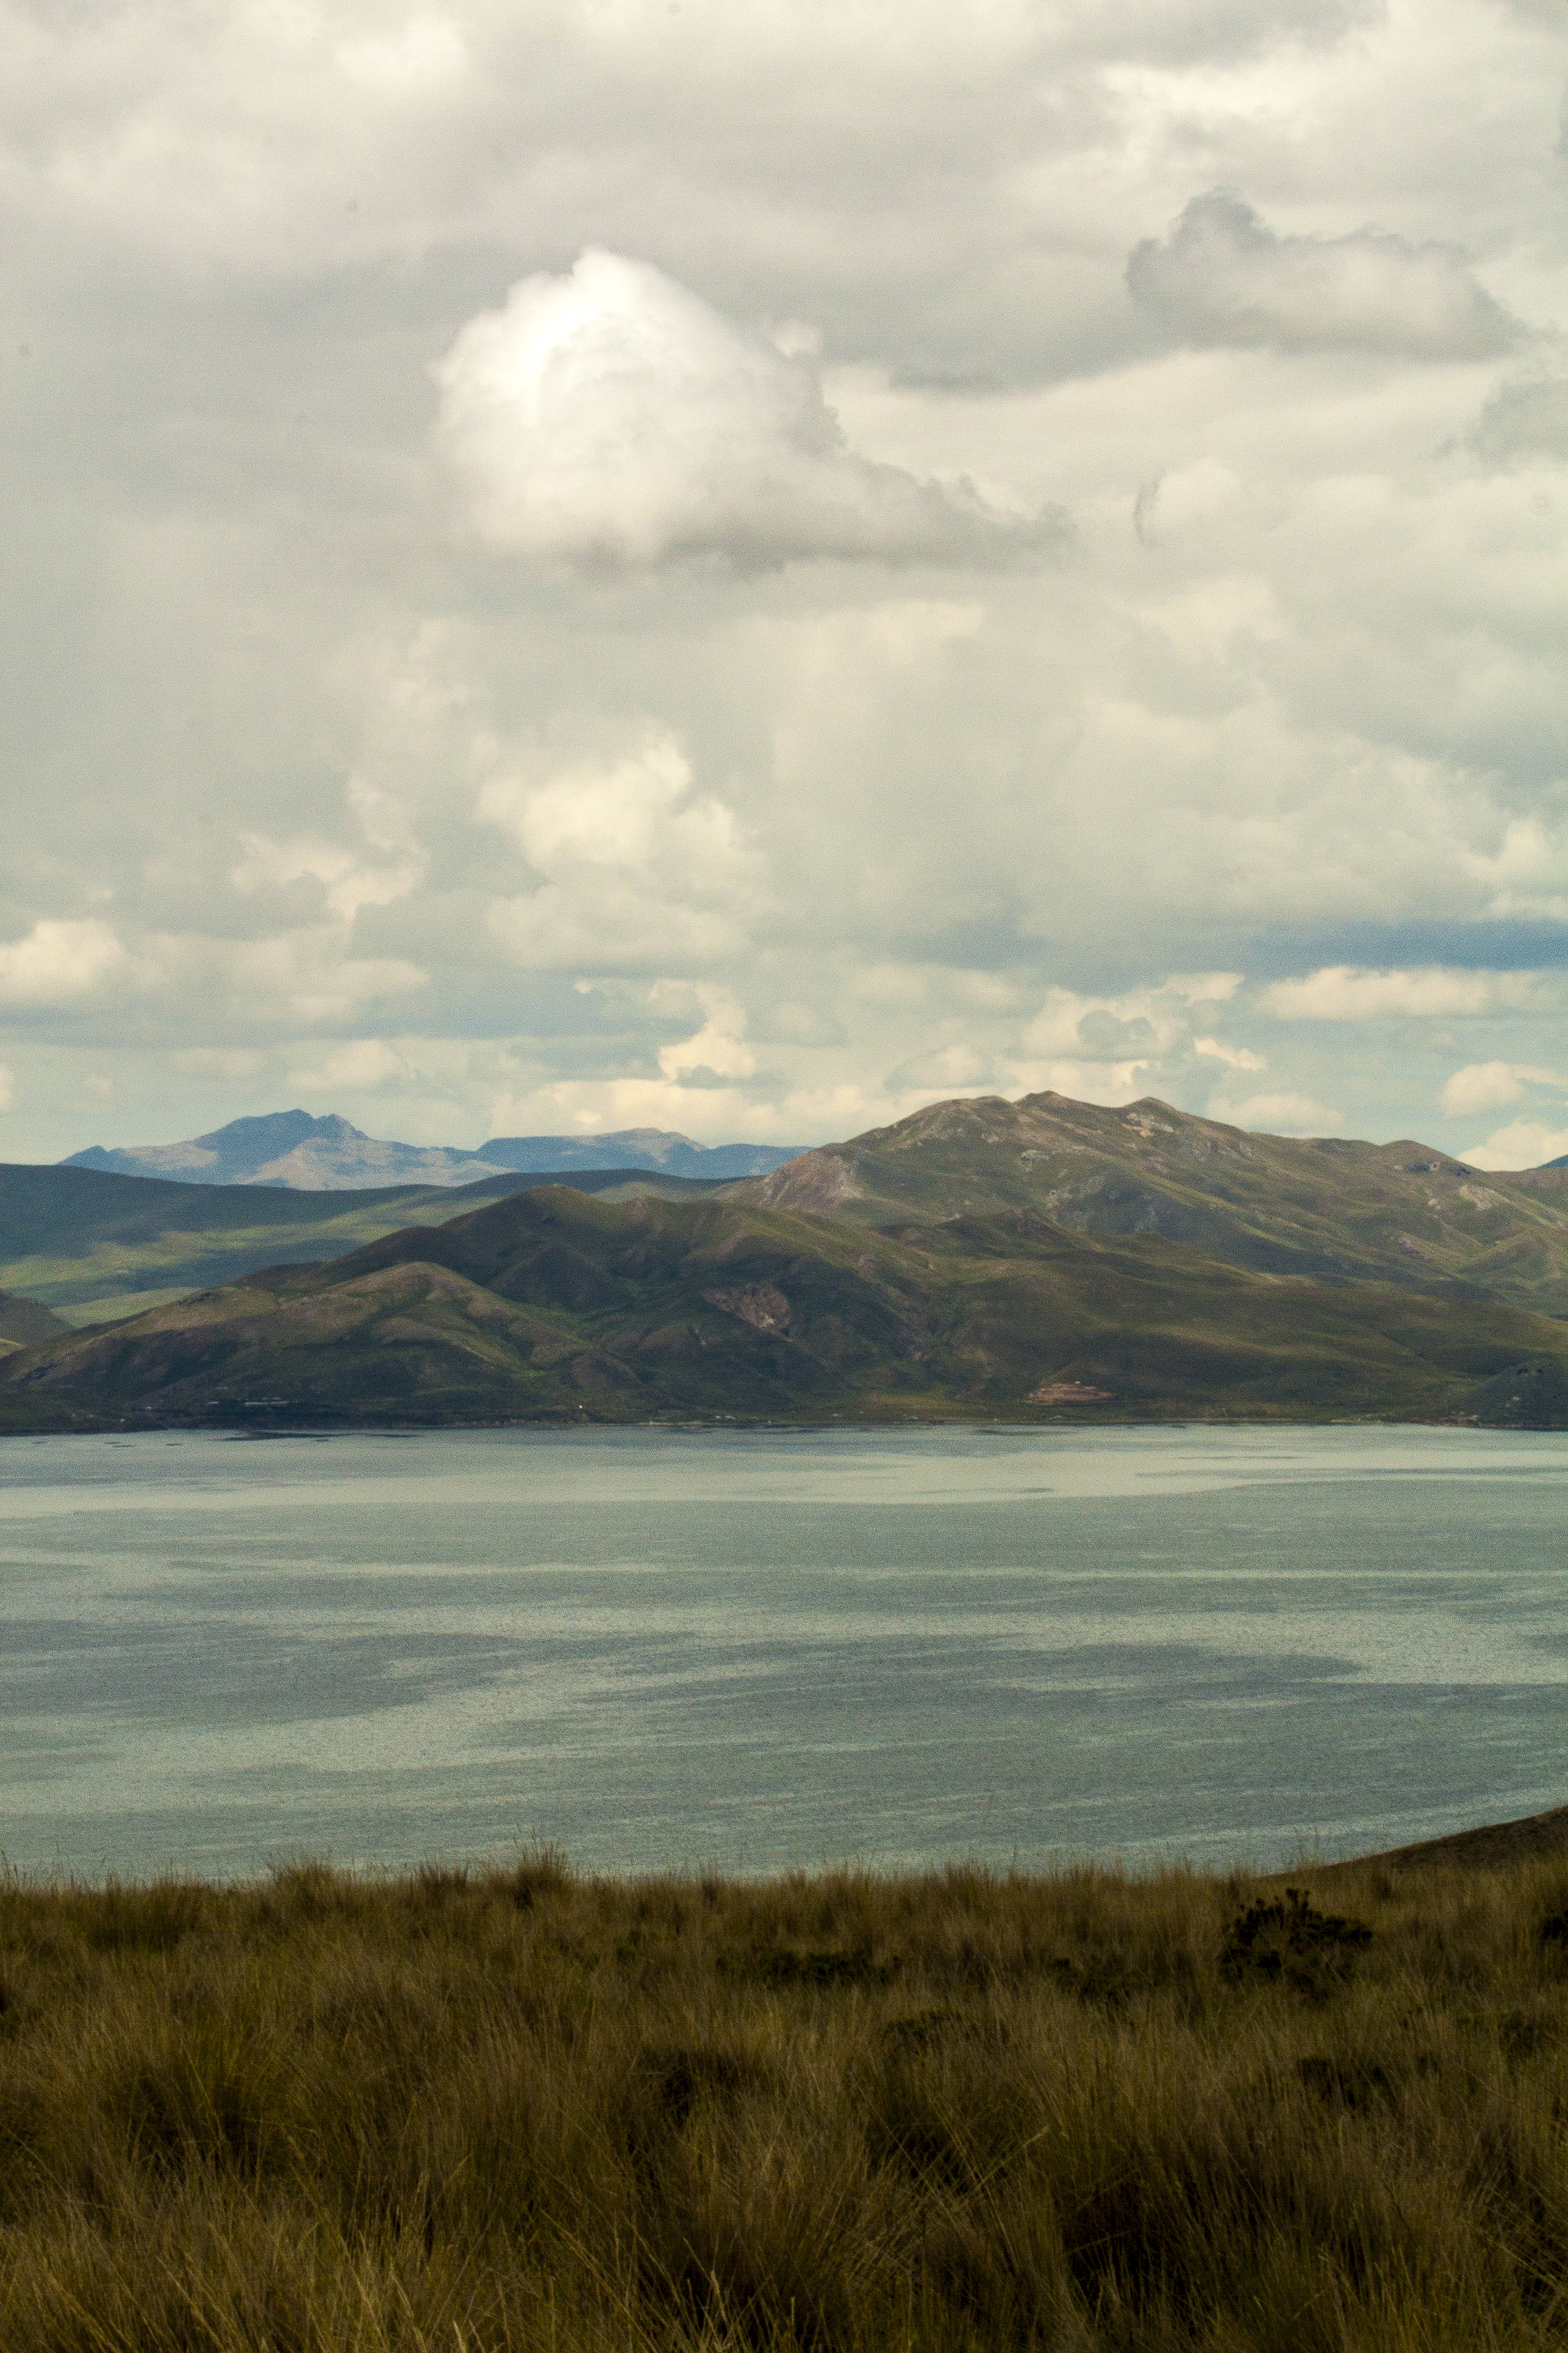 Vista al lago Carretera de Arequipa a Puno, Perú